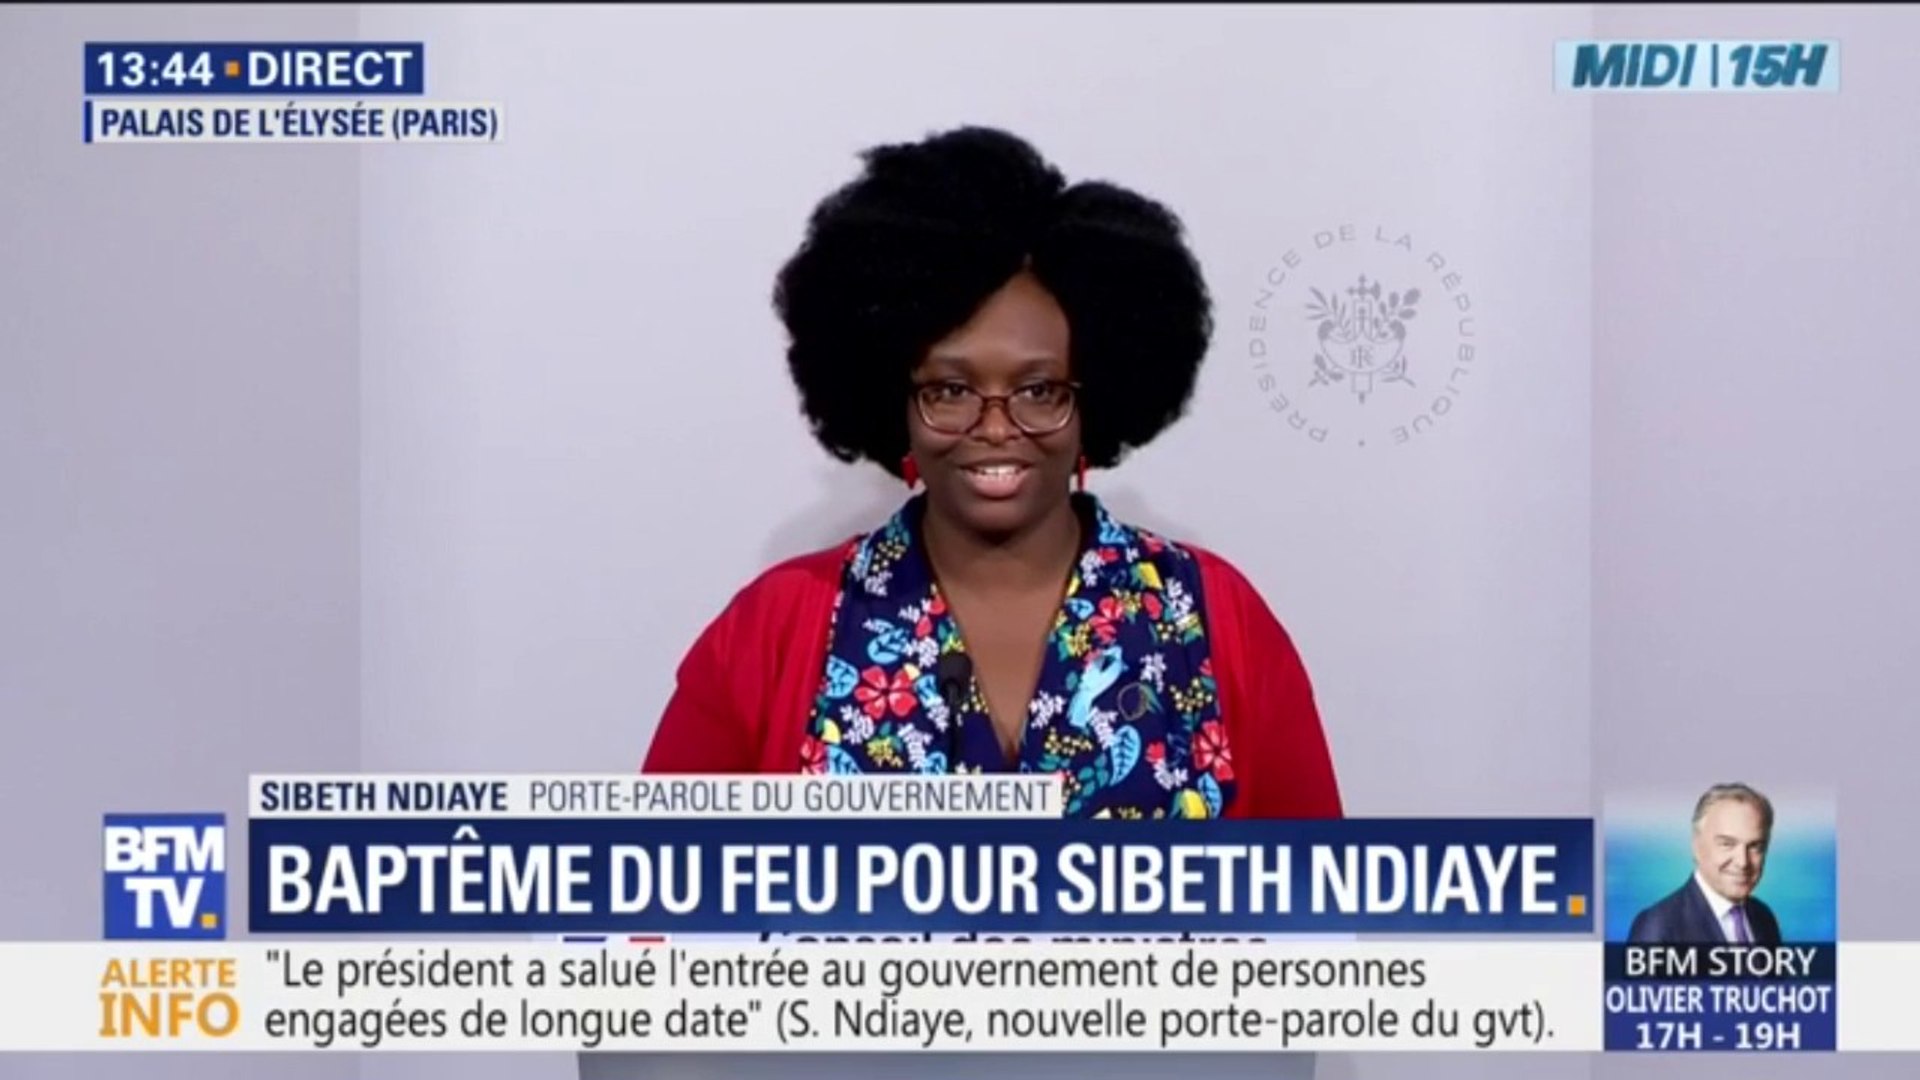 Sibeth Ndiaye, porte-parole du gouvernement: "Ceux qui me connaissent  savent que j'ai un certain franc parler" - Vidéo Dailymotion